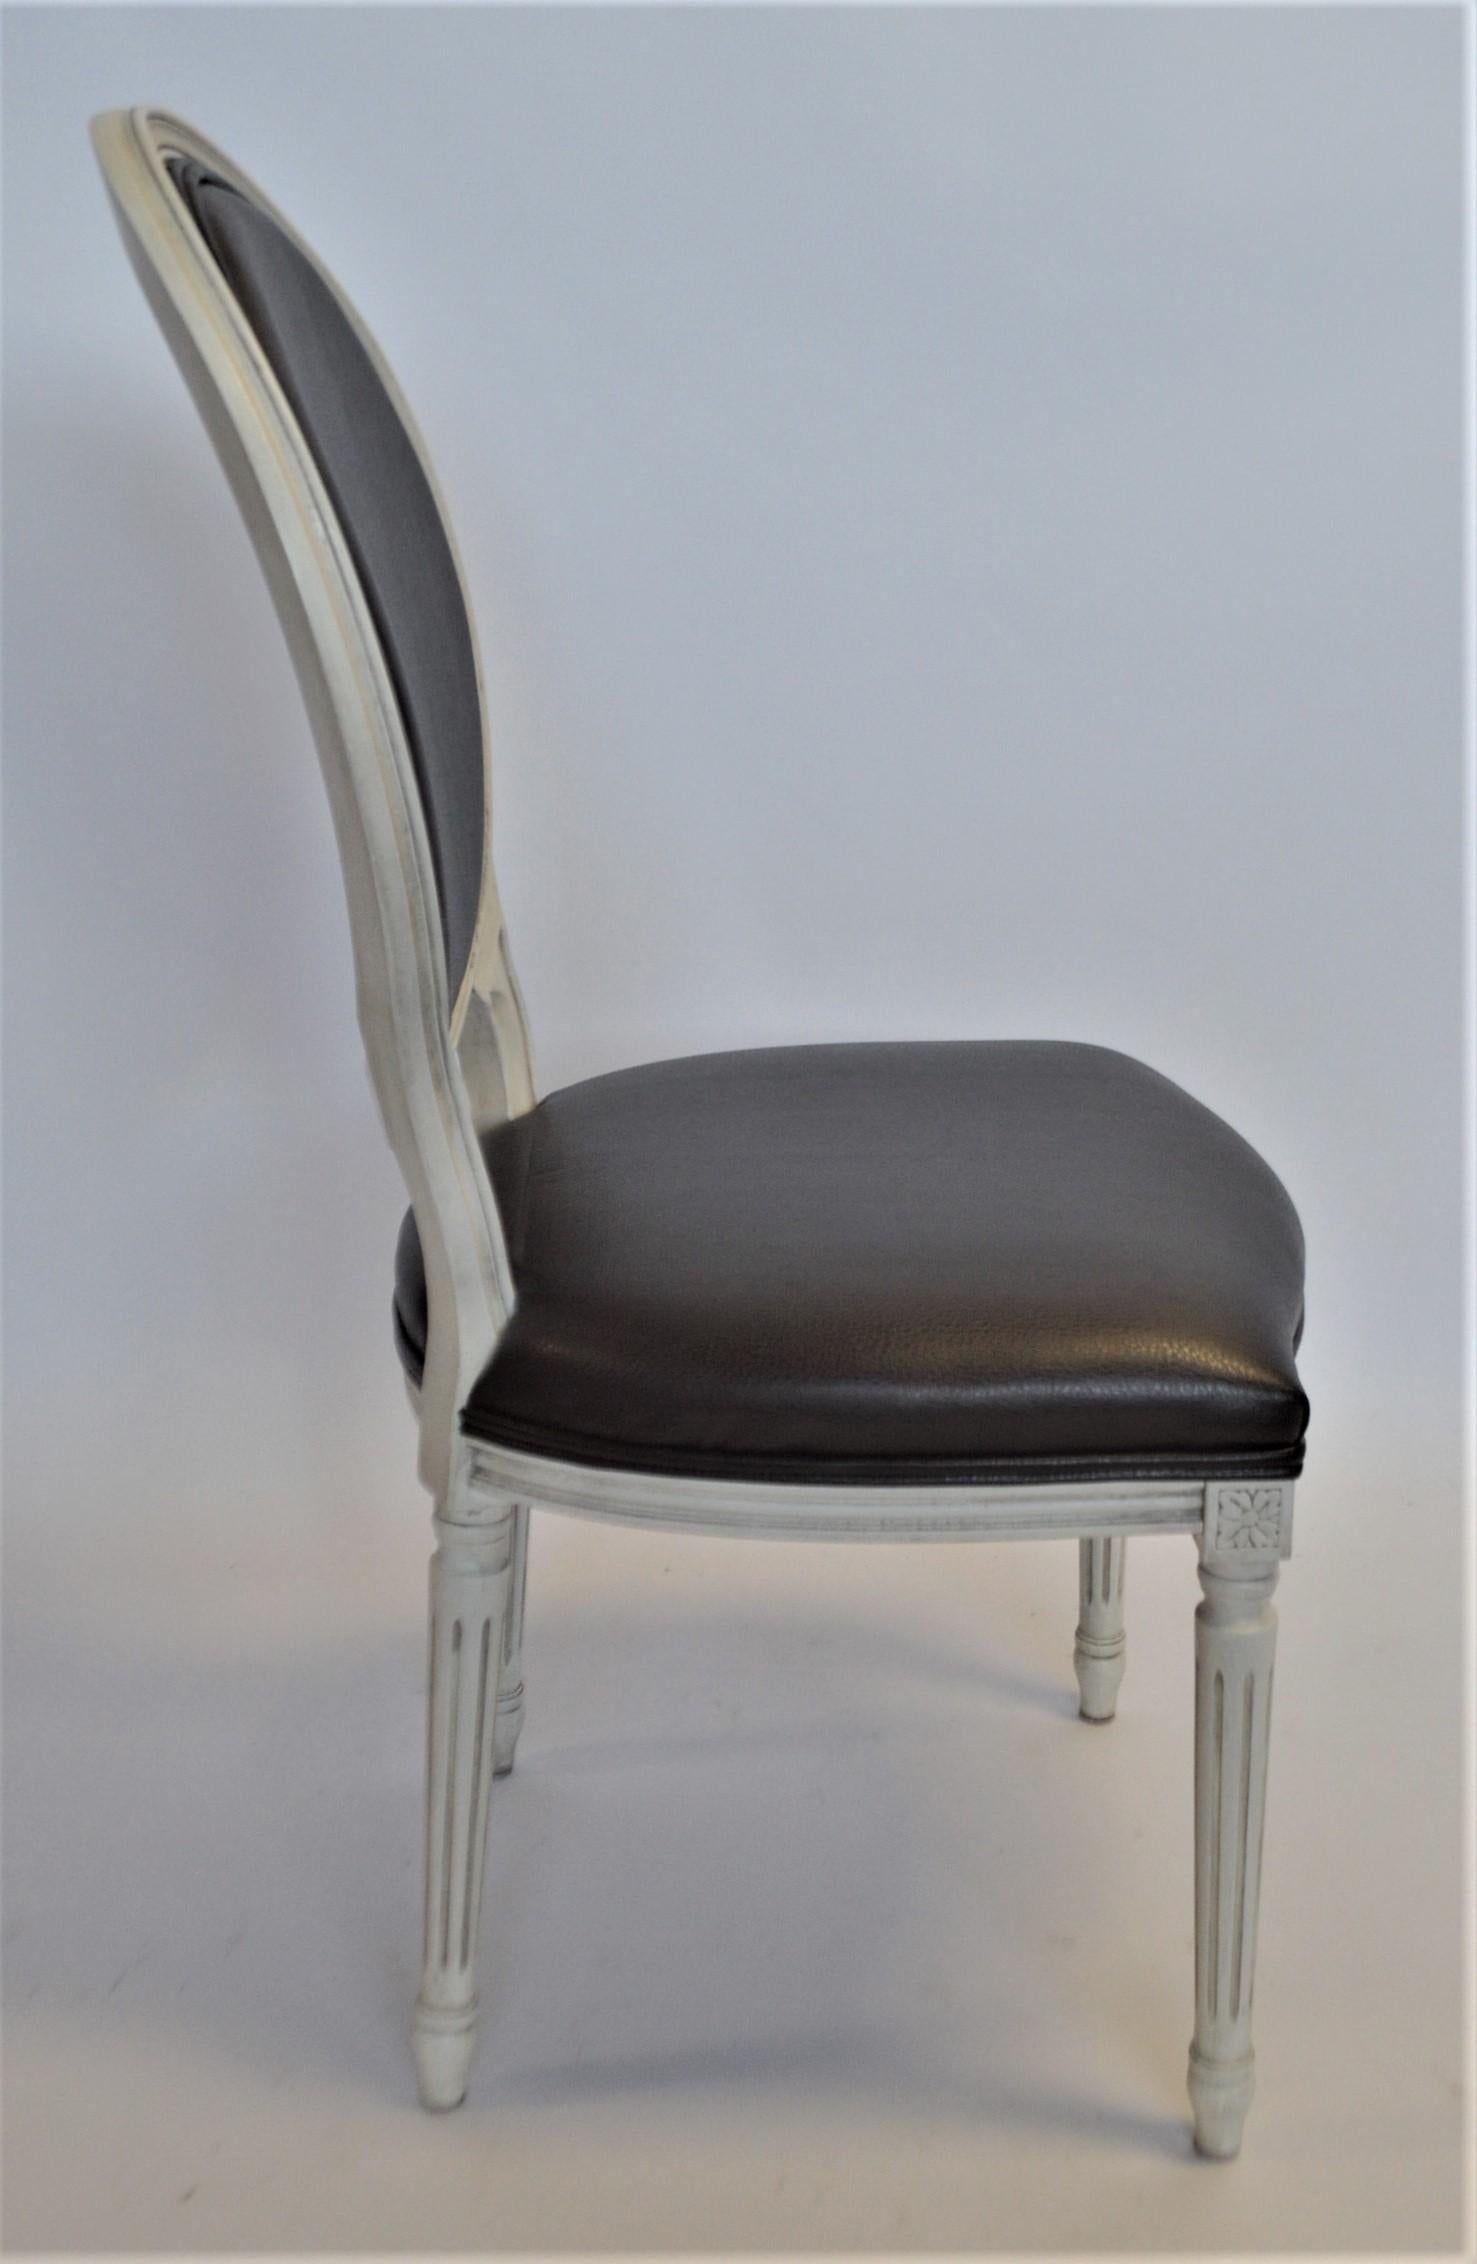 Dieser Esszimmerstuhl mit ovaler Rückenlehne im Louis XVI-Stil zeigt sich hier mit einem weiß patinierten Gestell und einer Polsterung aus schwarzem Kunstleder. Der Rahmen wird in Italien aus massivem Buchenholz hergestellt. Im Preis inbegriffen